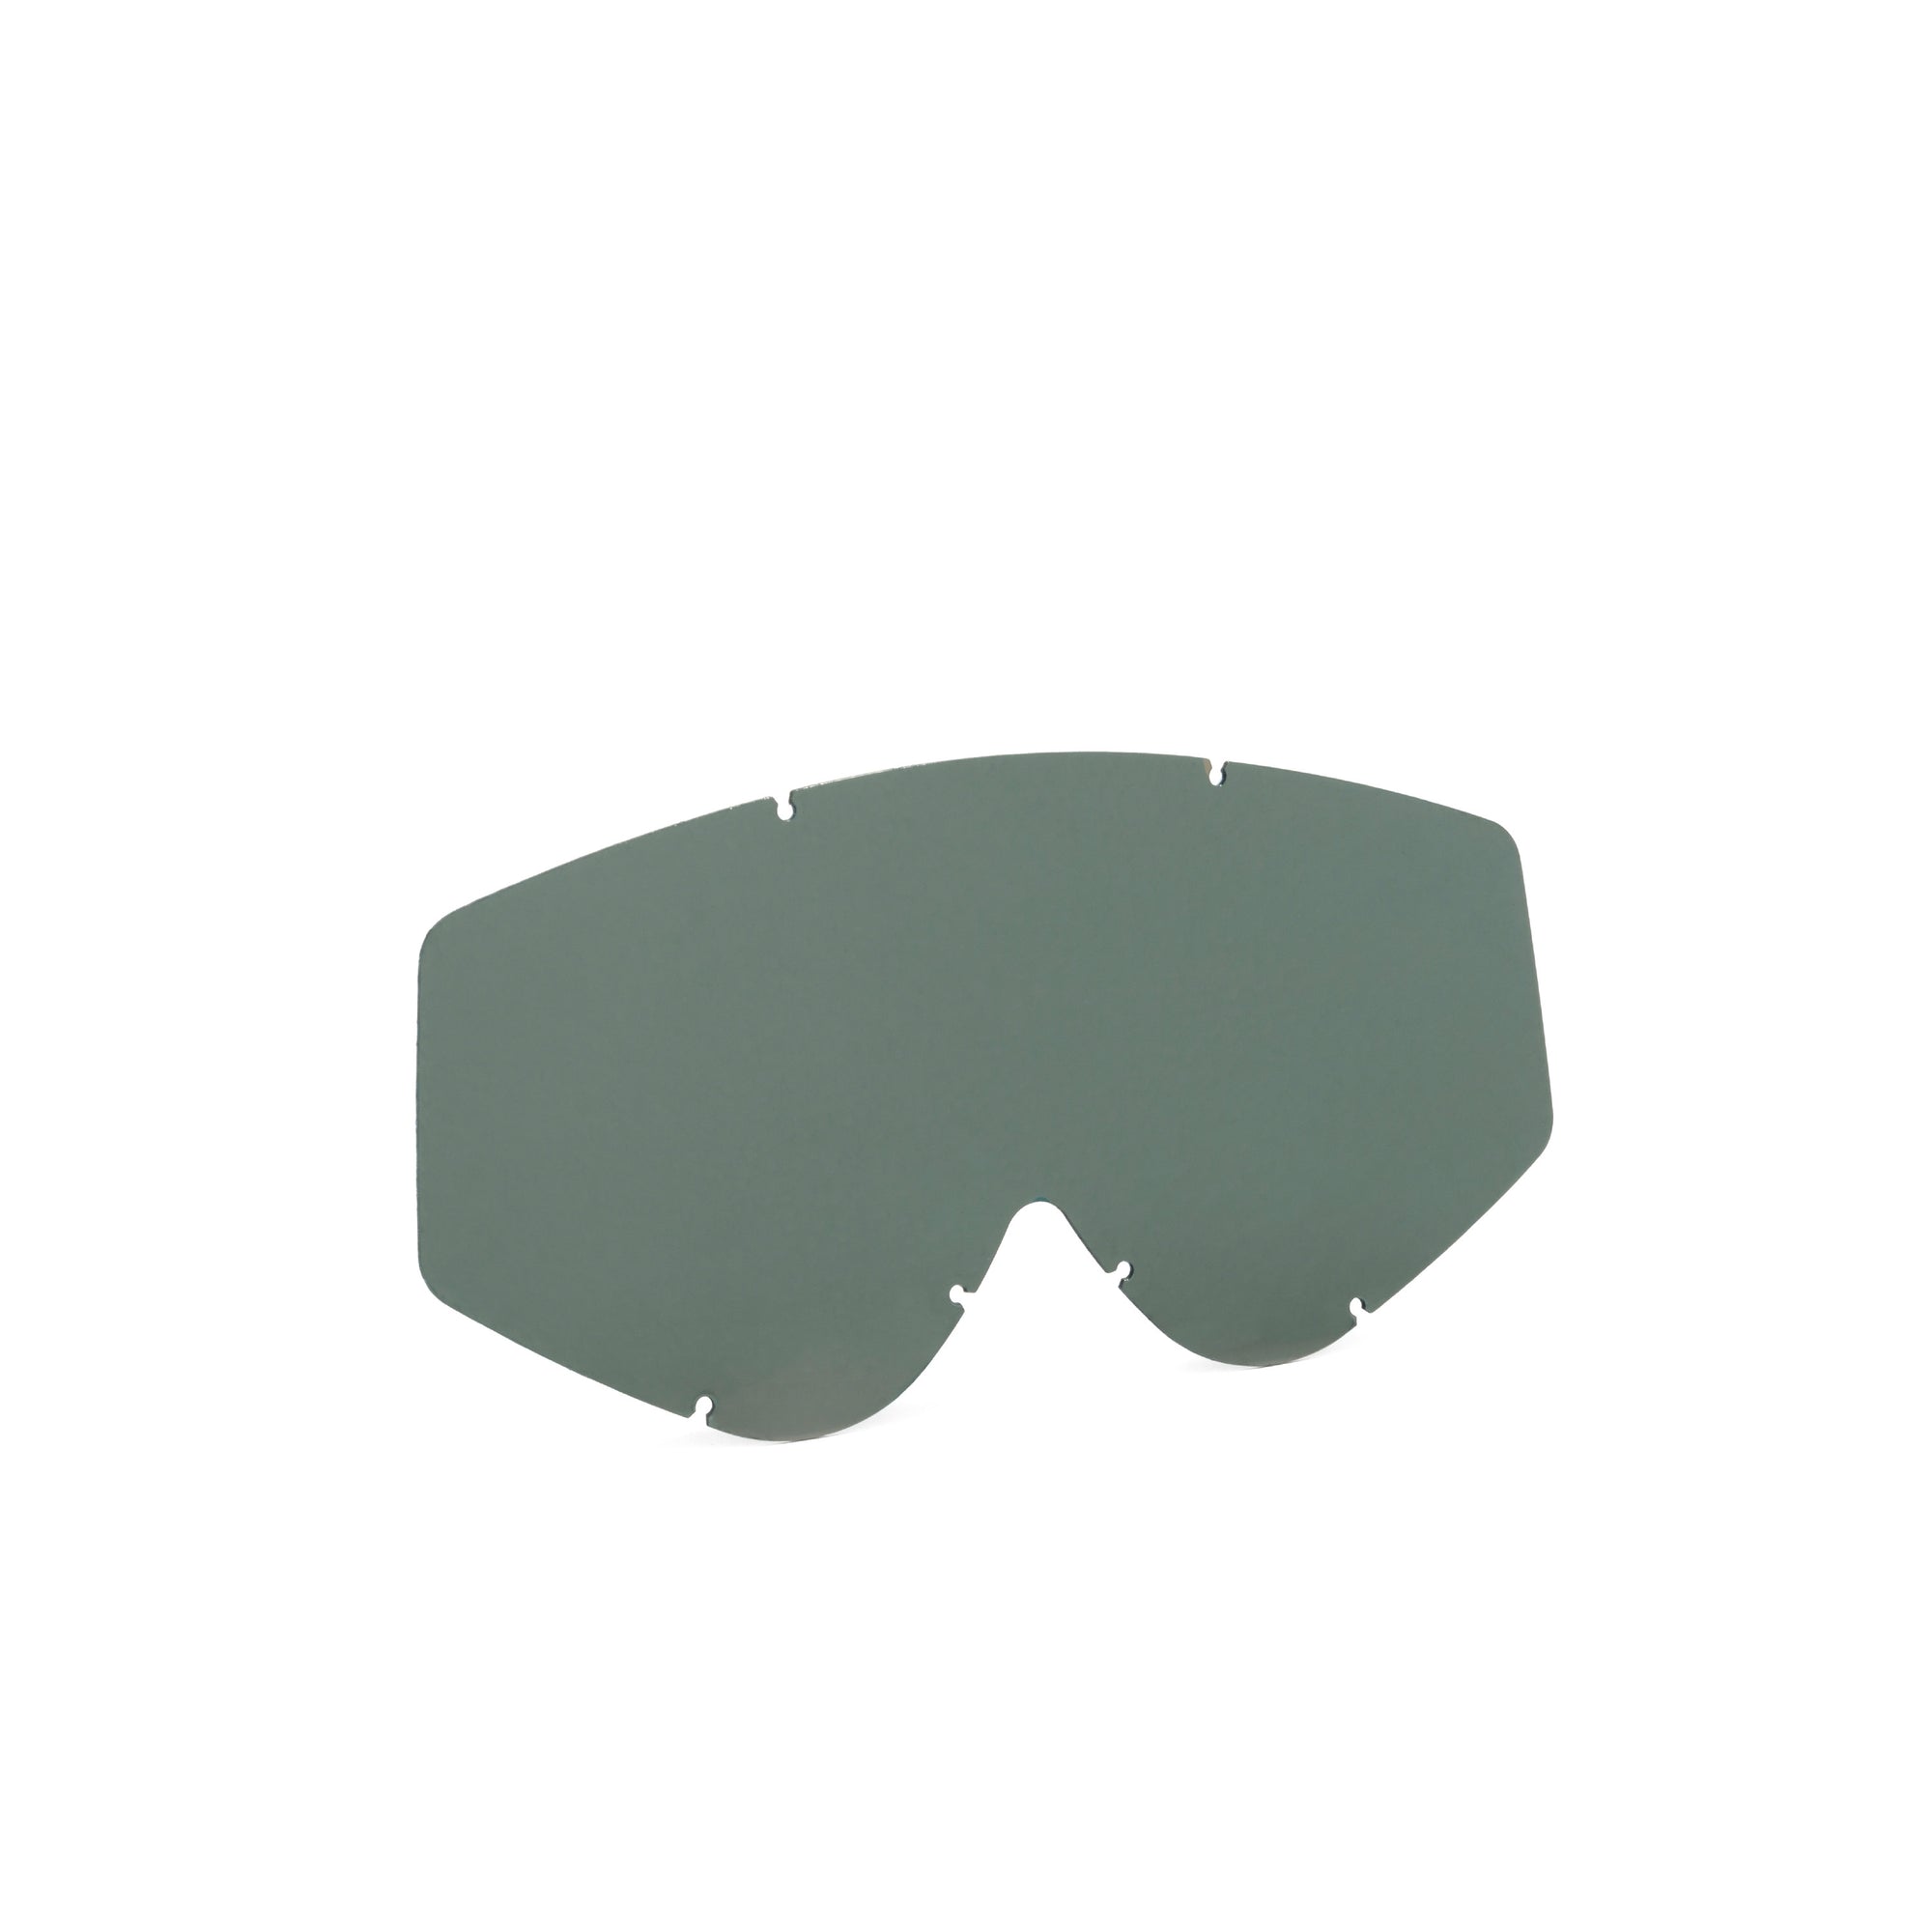 Nastify/Soaza Single Lens - Goggles Spare Lenses|LENASJS21